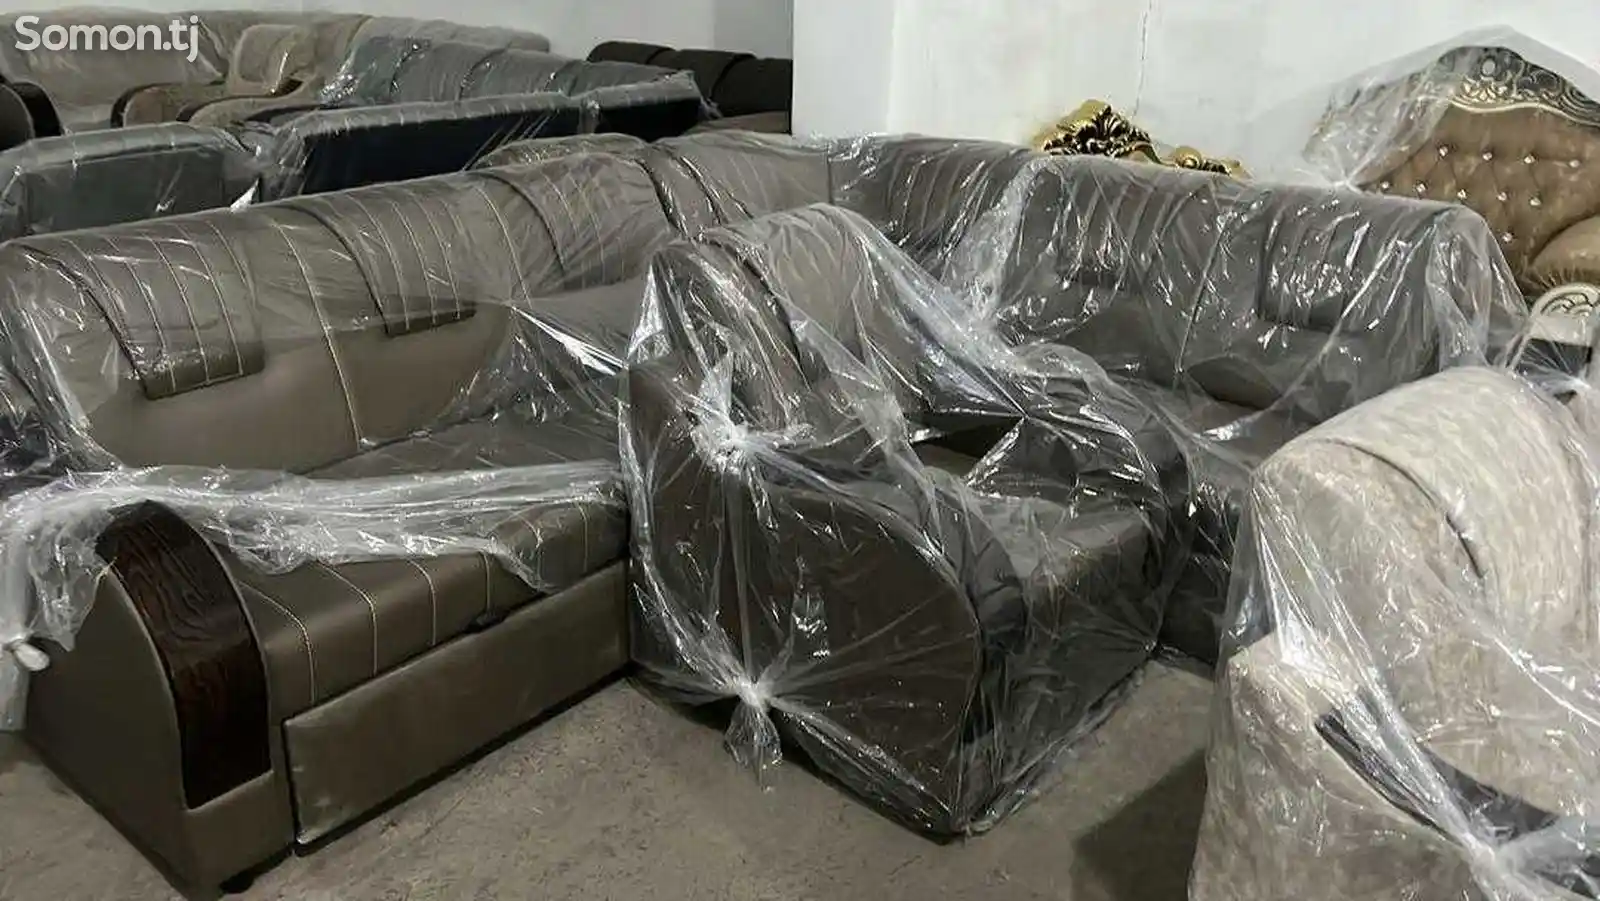 Угловой диван-1